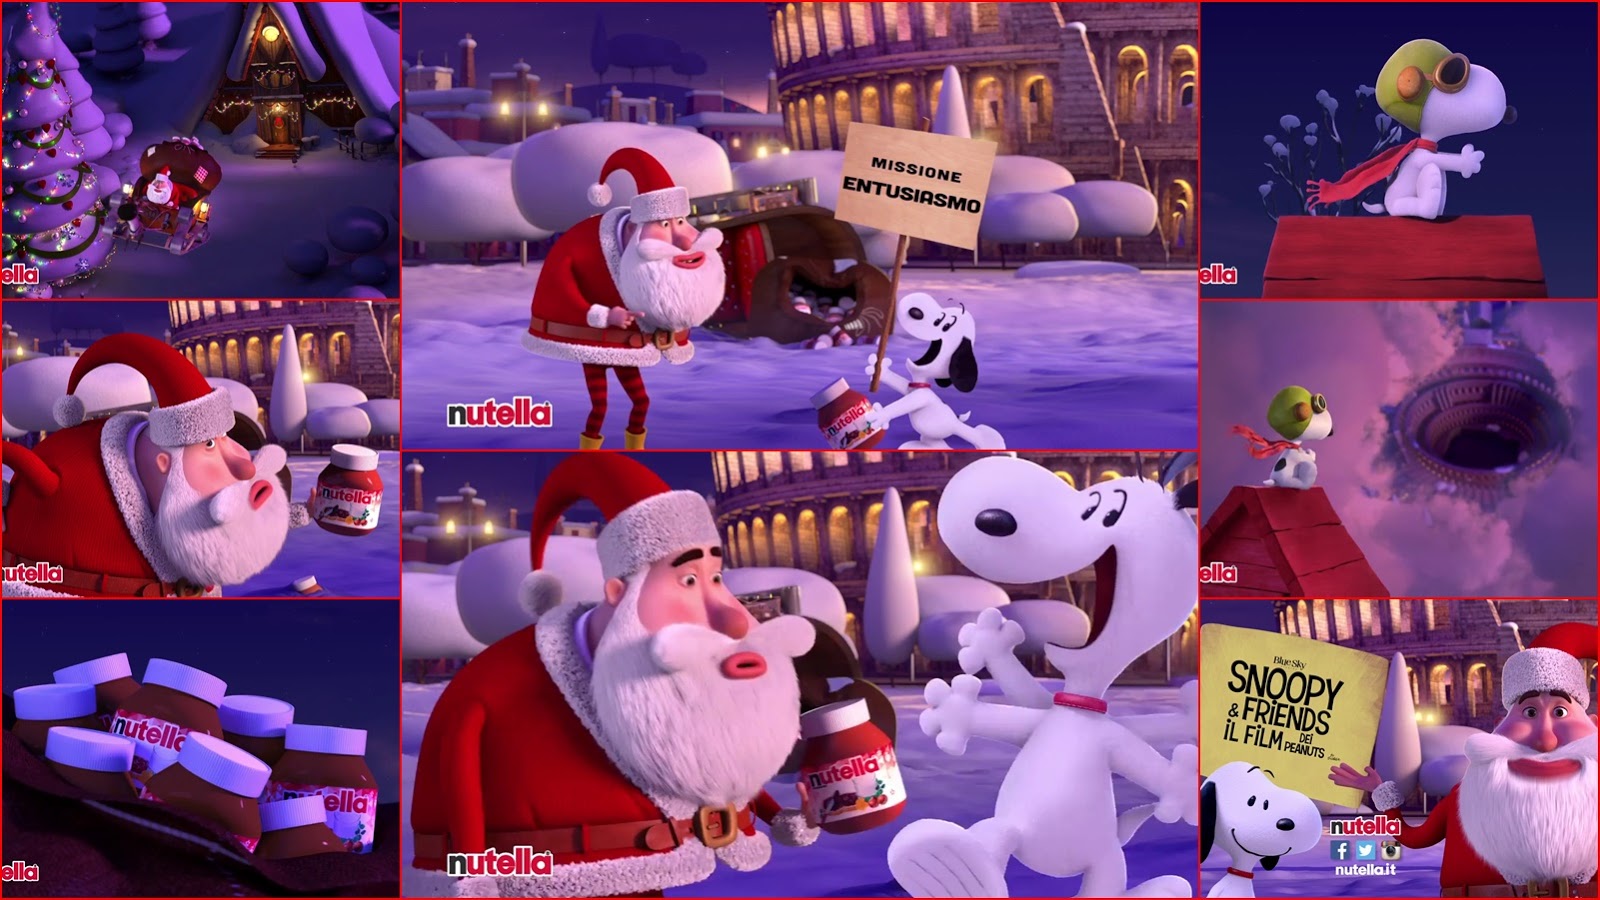 Babbo Natale 4 Nutella.Pubblicita Nutella Con Babbo Natale E Snoopy Missione Entusiamo